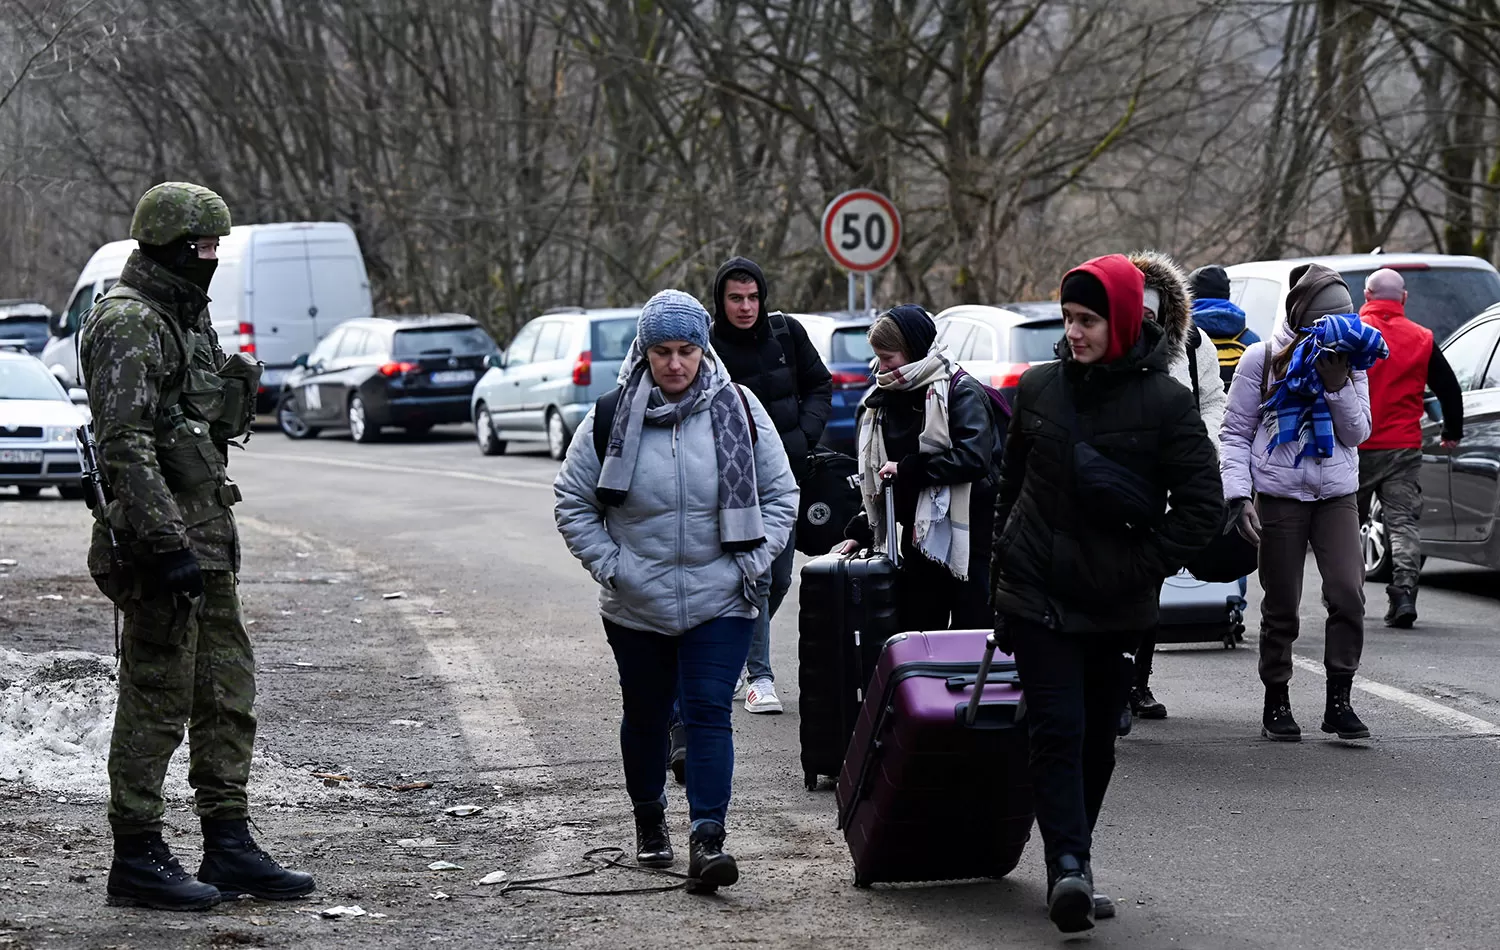 LA PEOR CARA DE LA GUERRA. Ciudadanos ucranianos llegan con sus valijas a Eslovaquia para escapar de los sangrientos ataques rusos. 